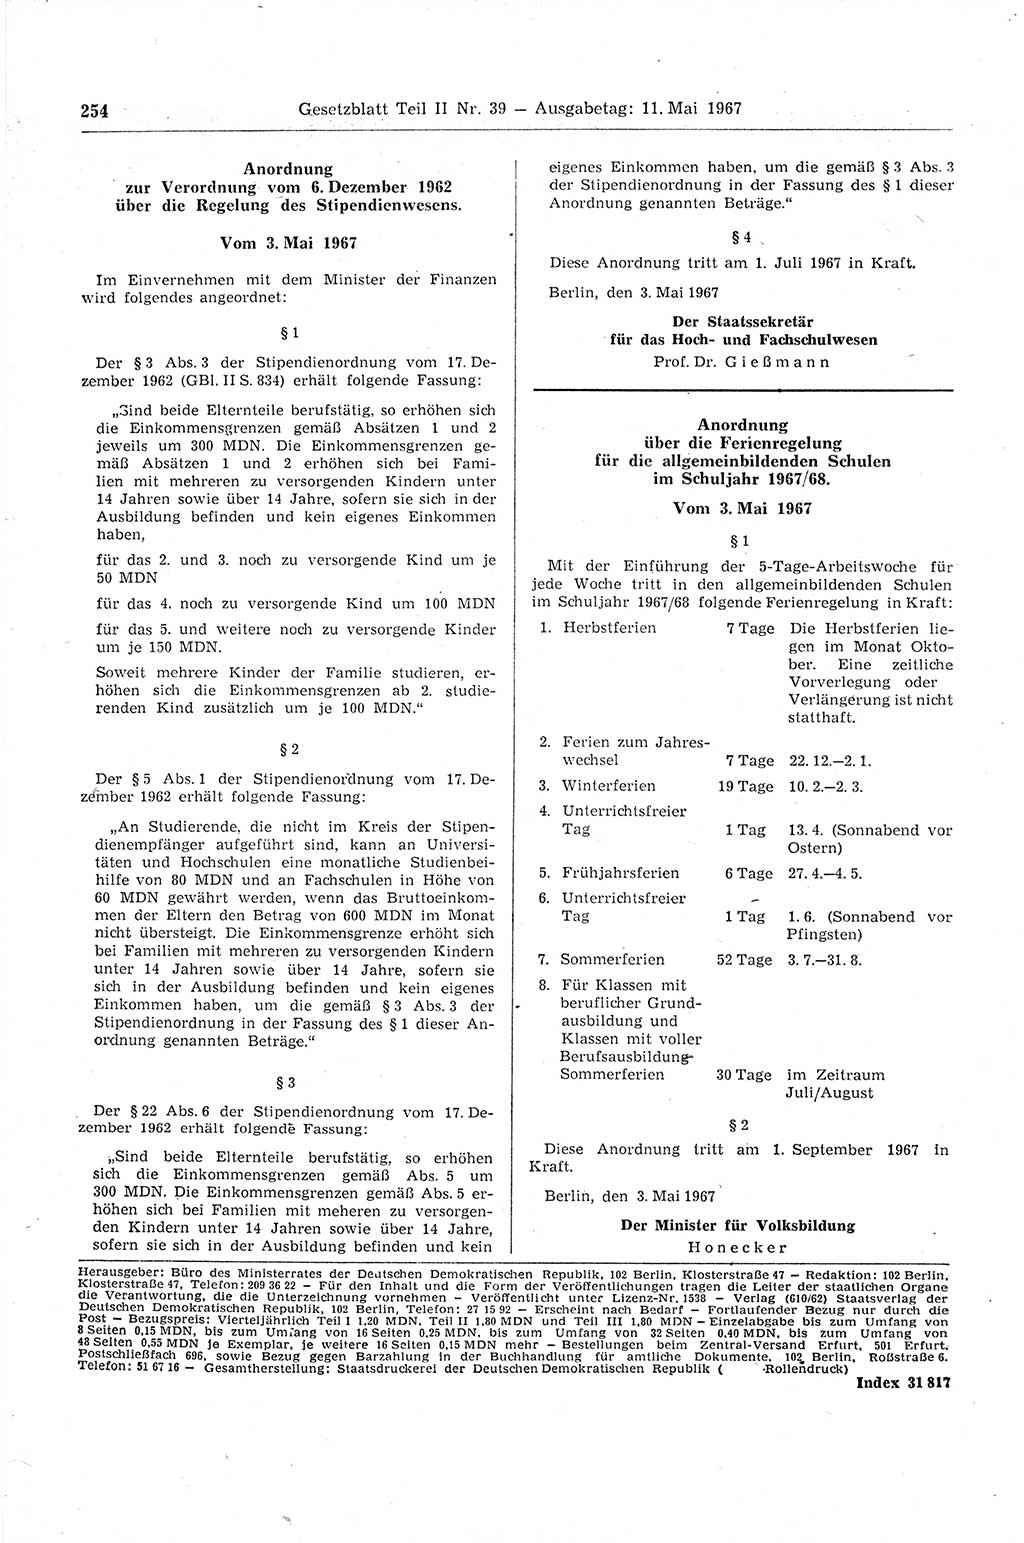 Gesetzblatt (GBl.) der Deutschen Demokratischen Republik (DDR) Teil ⅠⅠ 1967, Seite 254 (GBl. DDR ⅠⅠ 1967, S. 254)